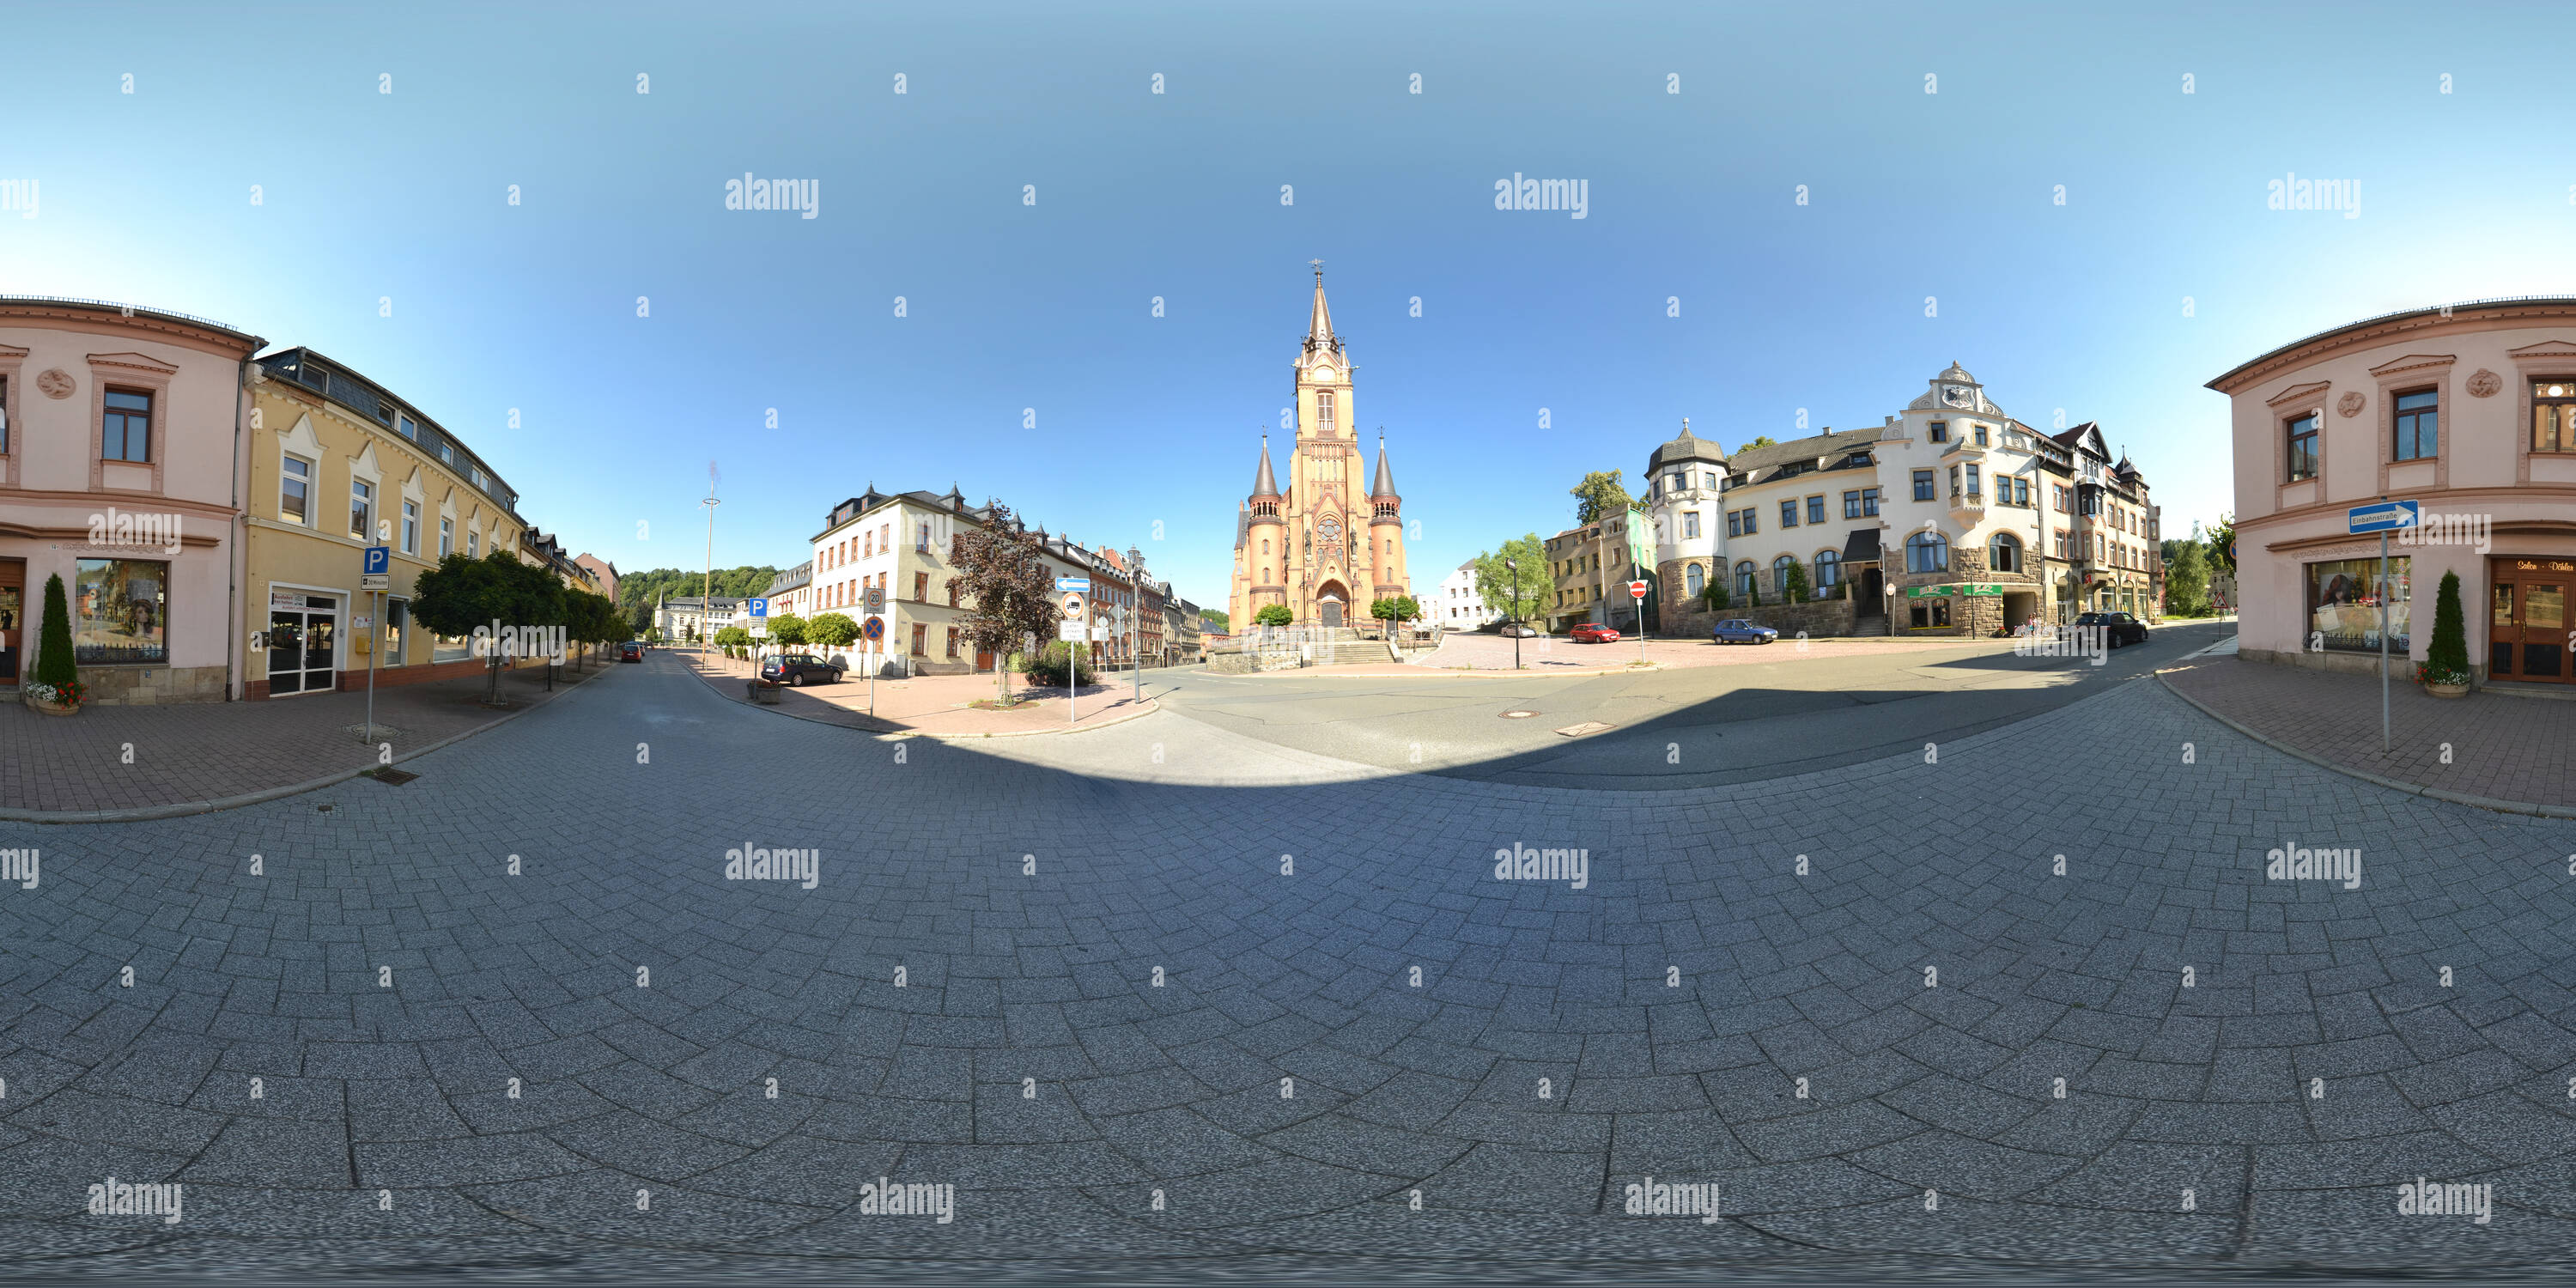 Visualizzazione panoramica a 360 gradi di Città Chiesa Mylau-Stadtkirche Mylau